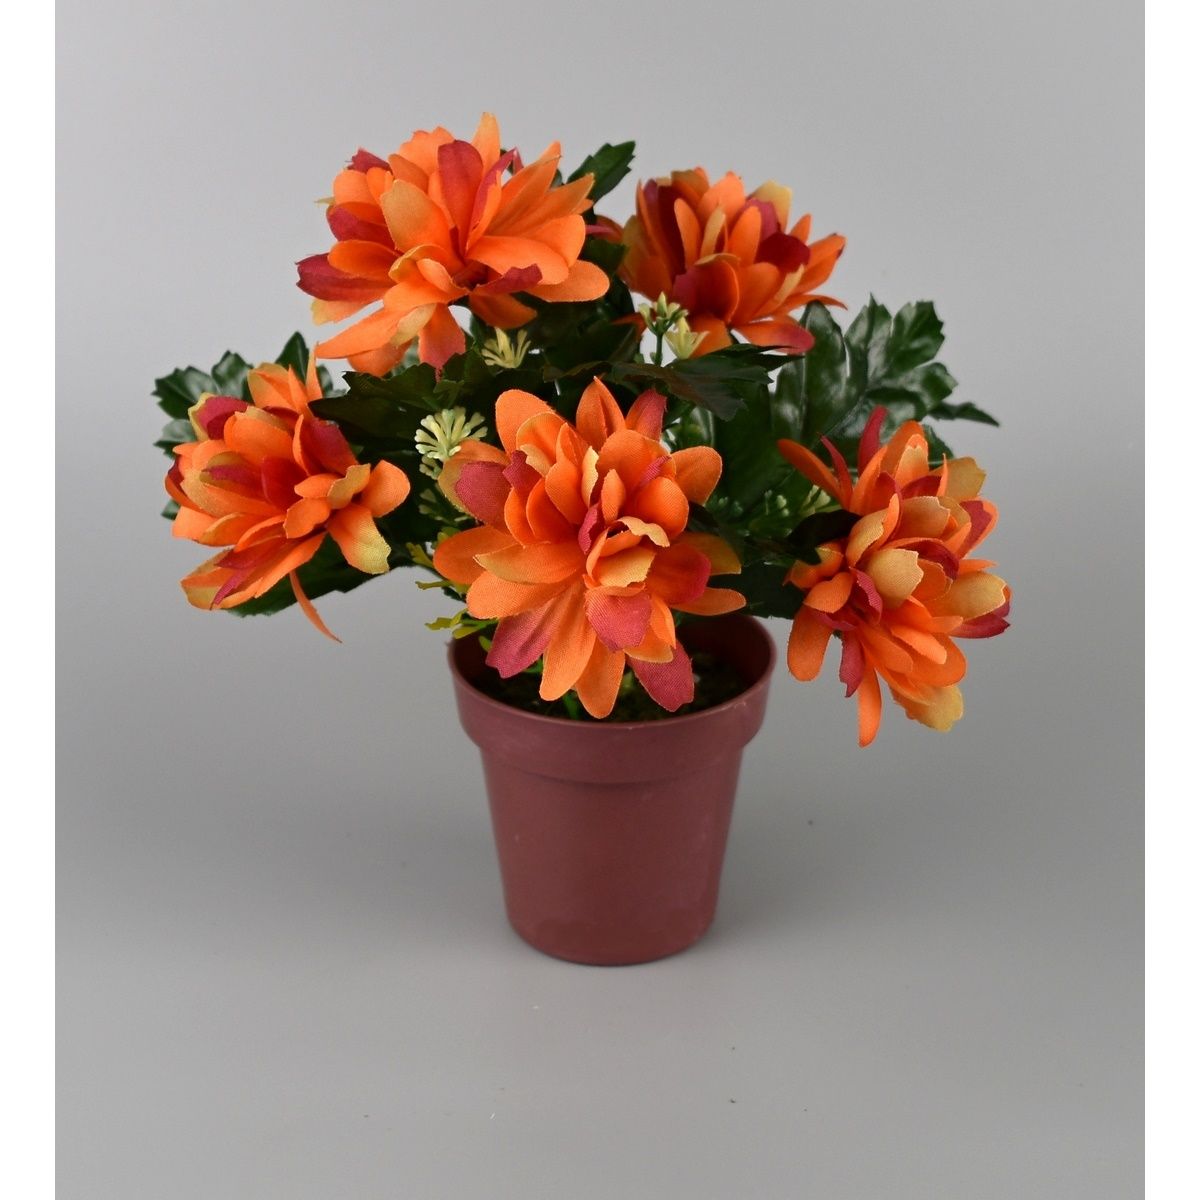 Umělá květina Chrysantéma v květináči 16 x 14 cm, oranžová - 4home.cz